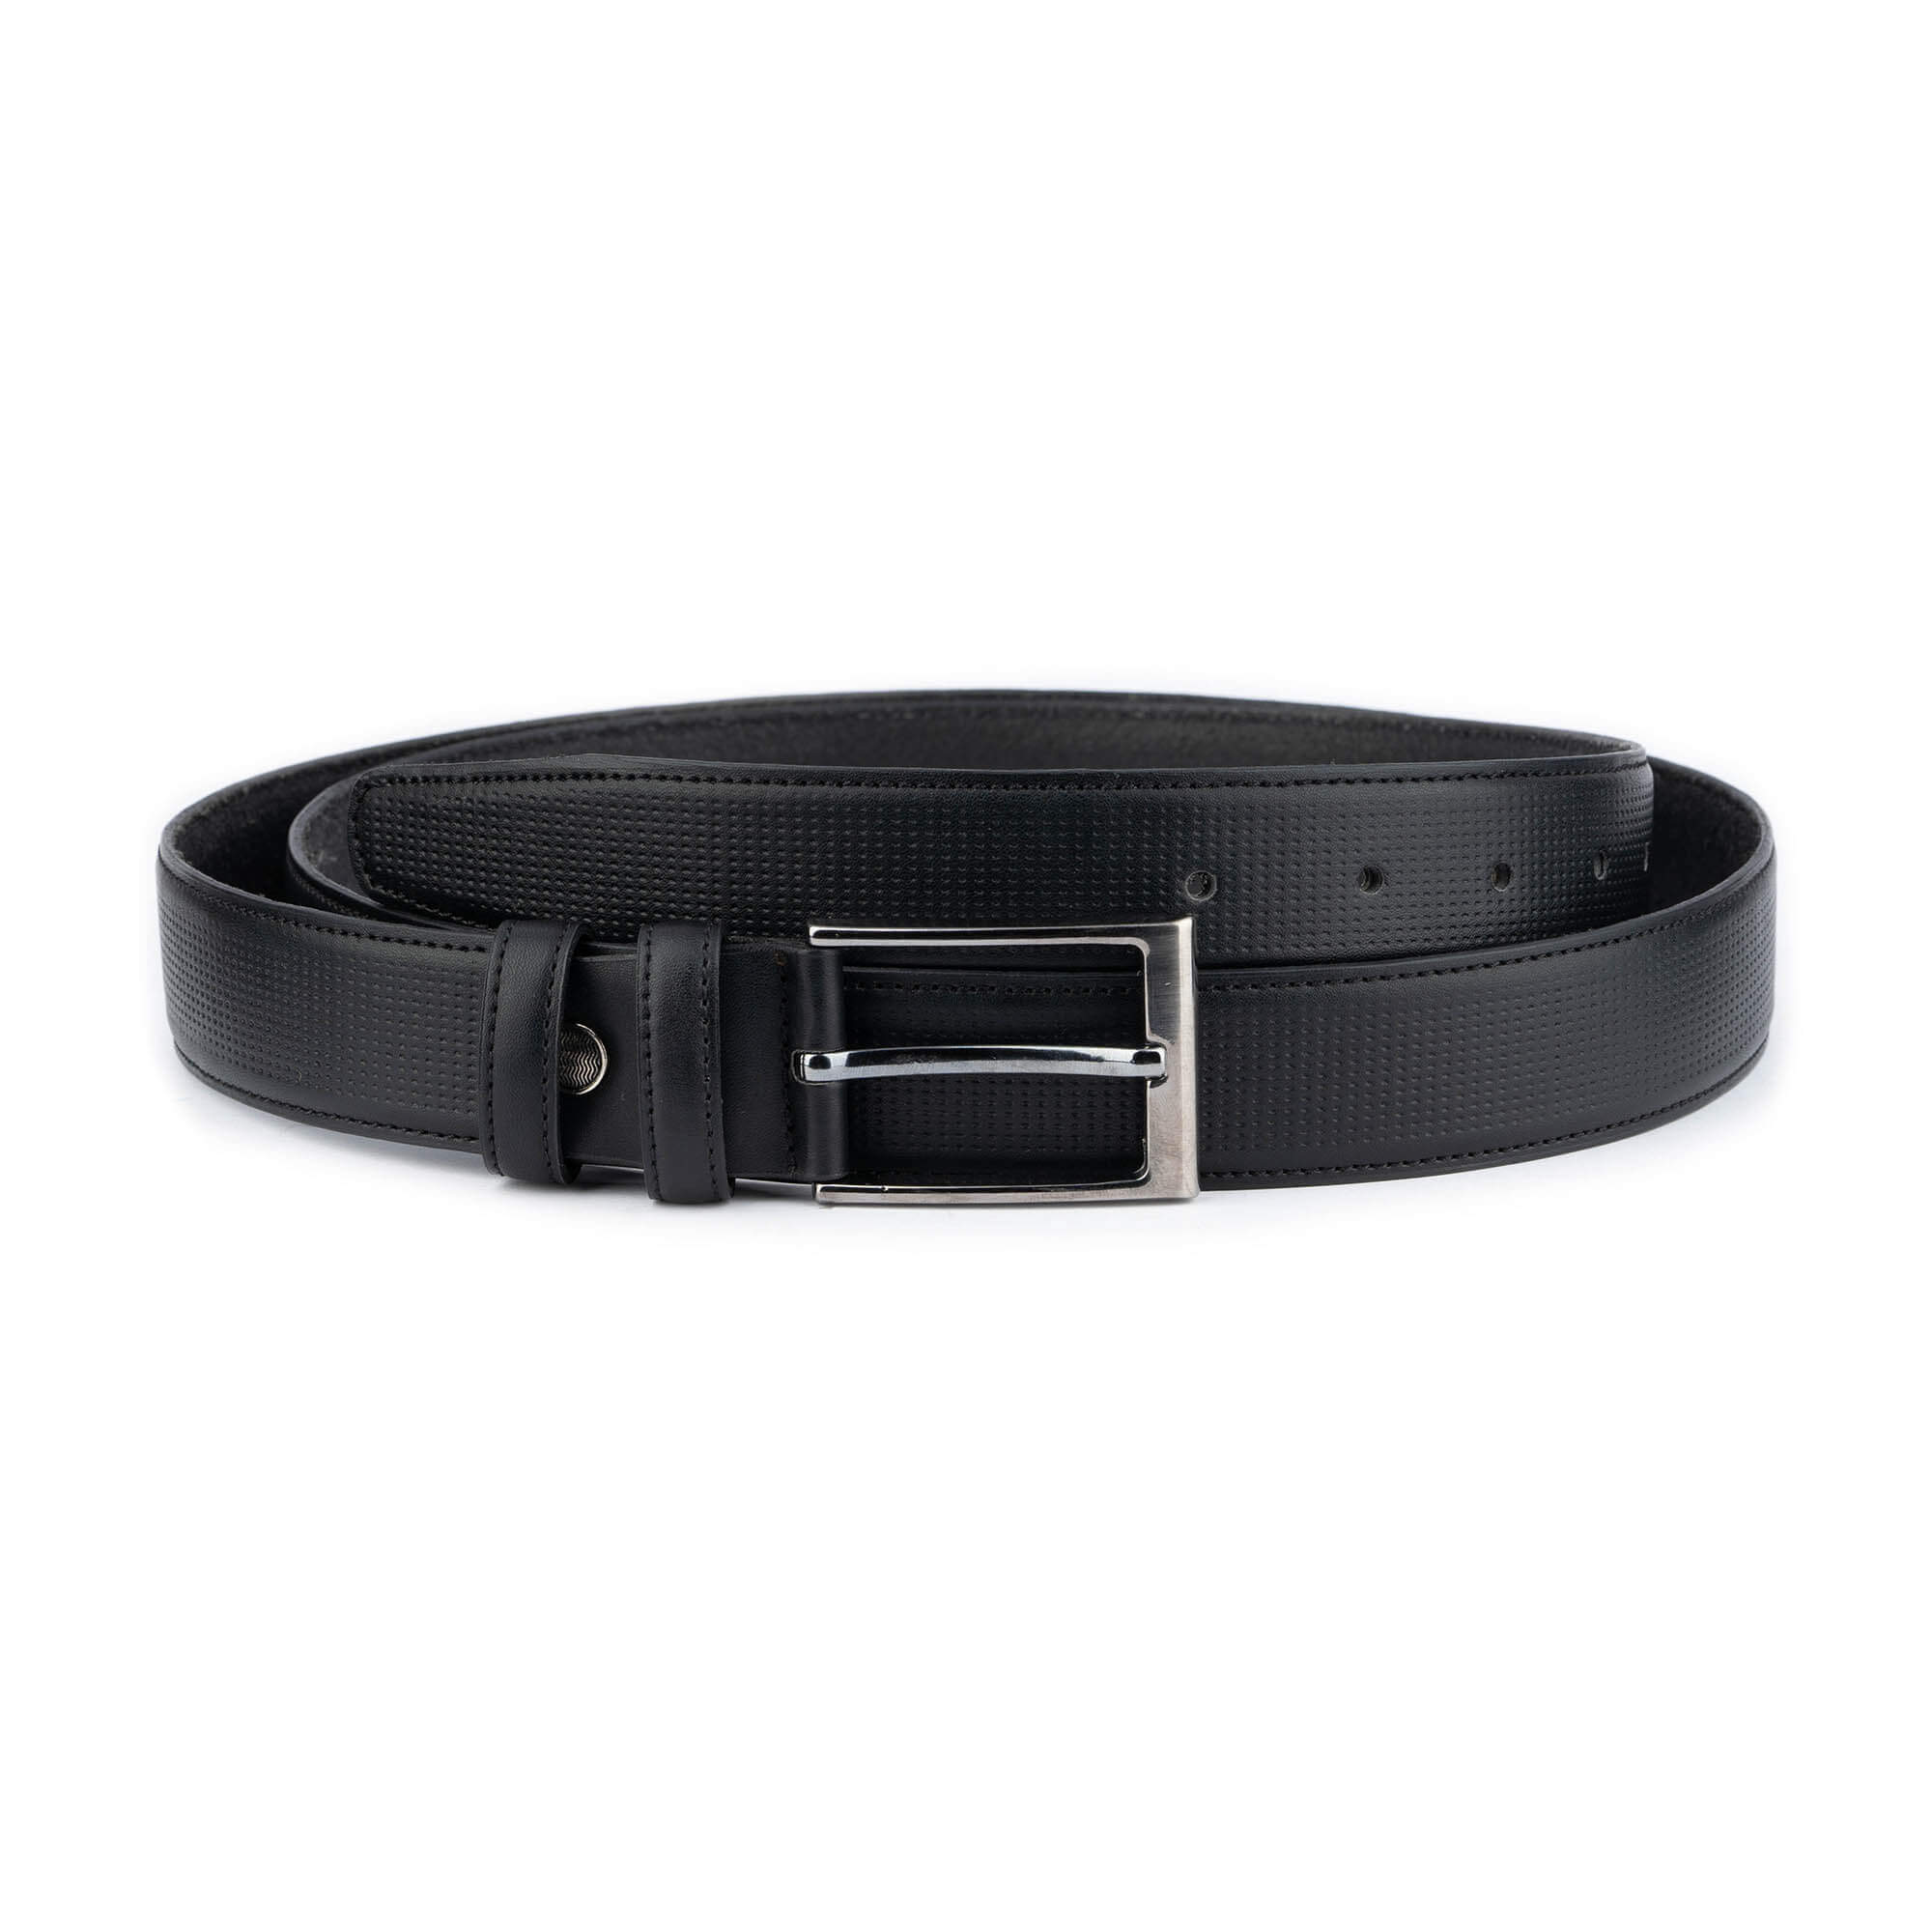 Buy Mens Perforated Leather Belt Black - LeatherBeltsOnline.com